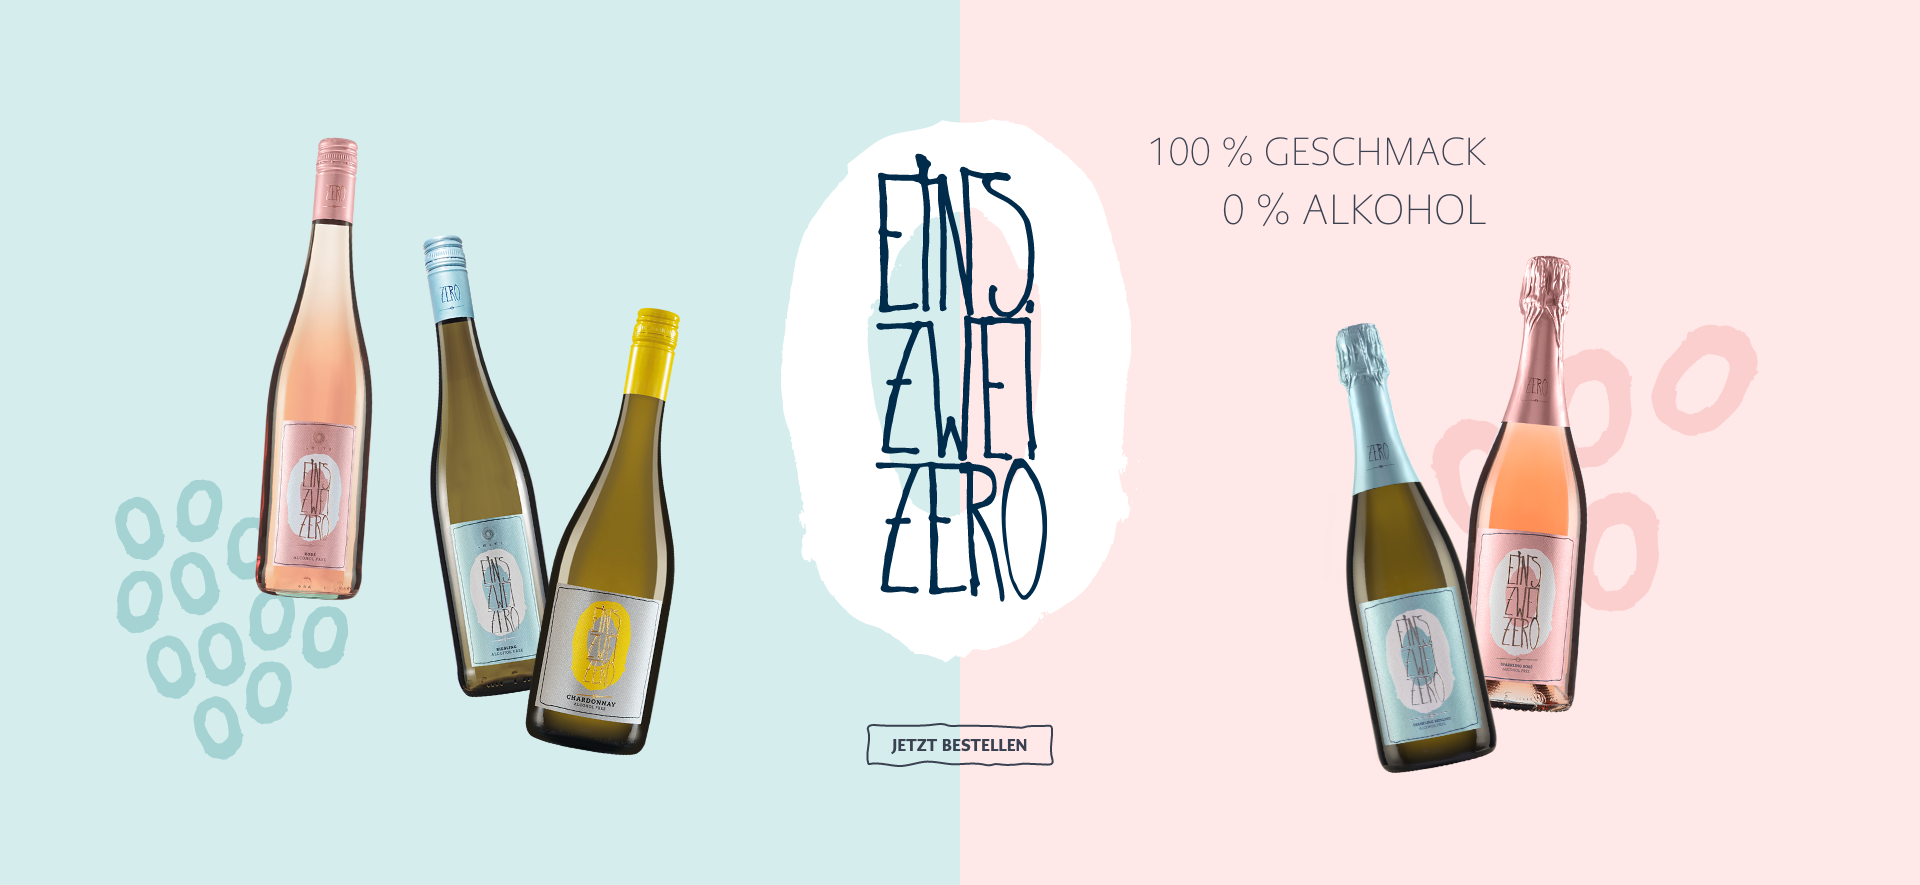 Banner Leitz Wein Eins Zwei Zero